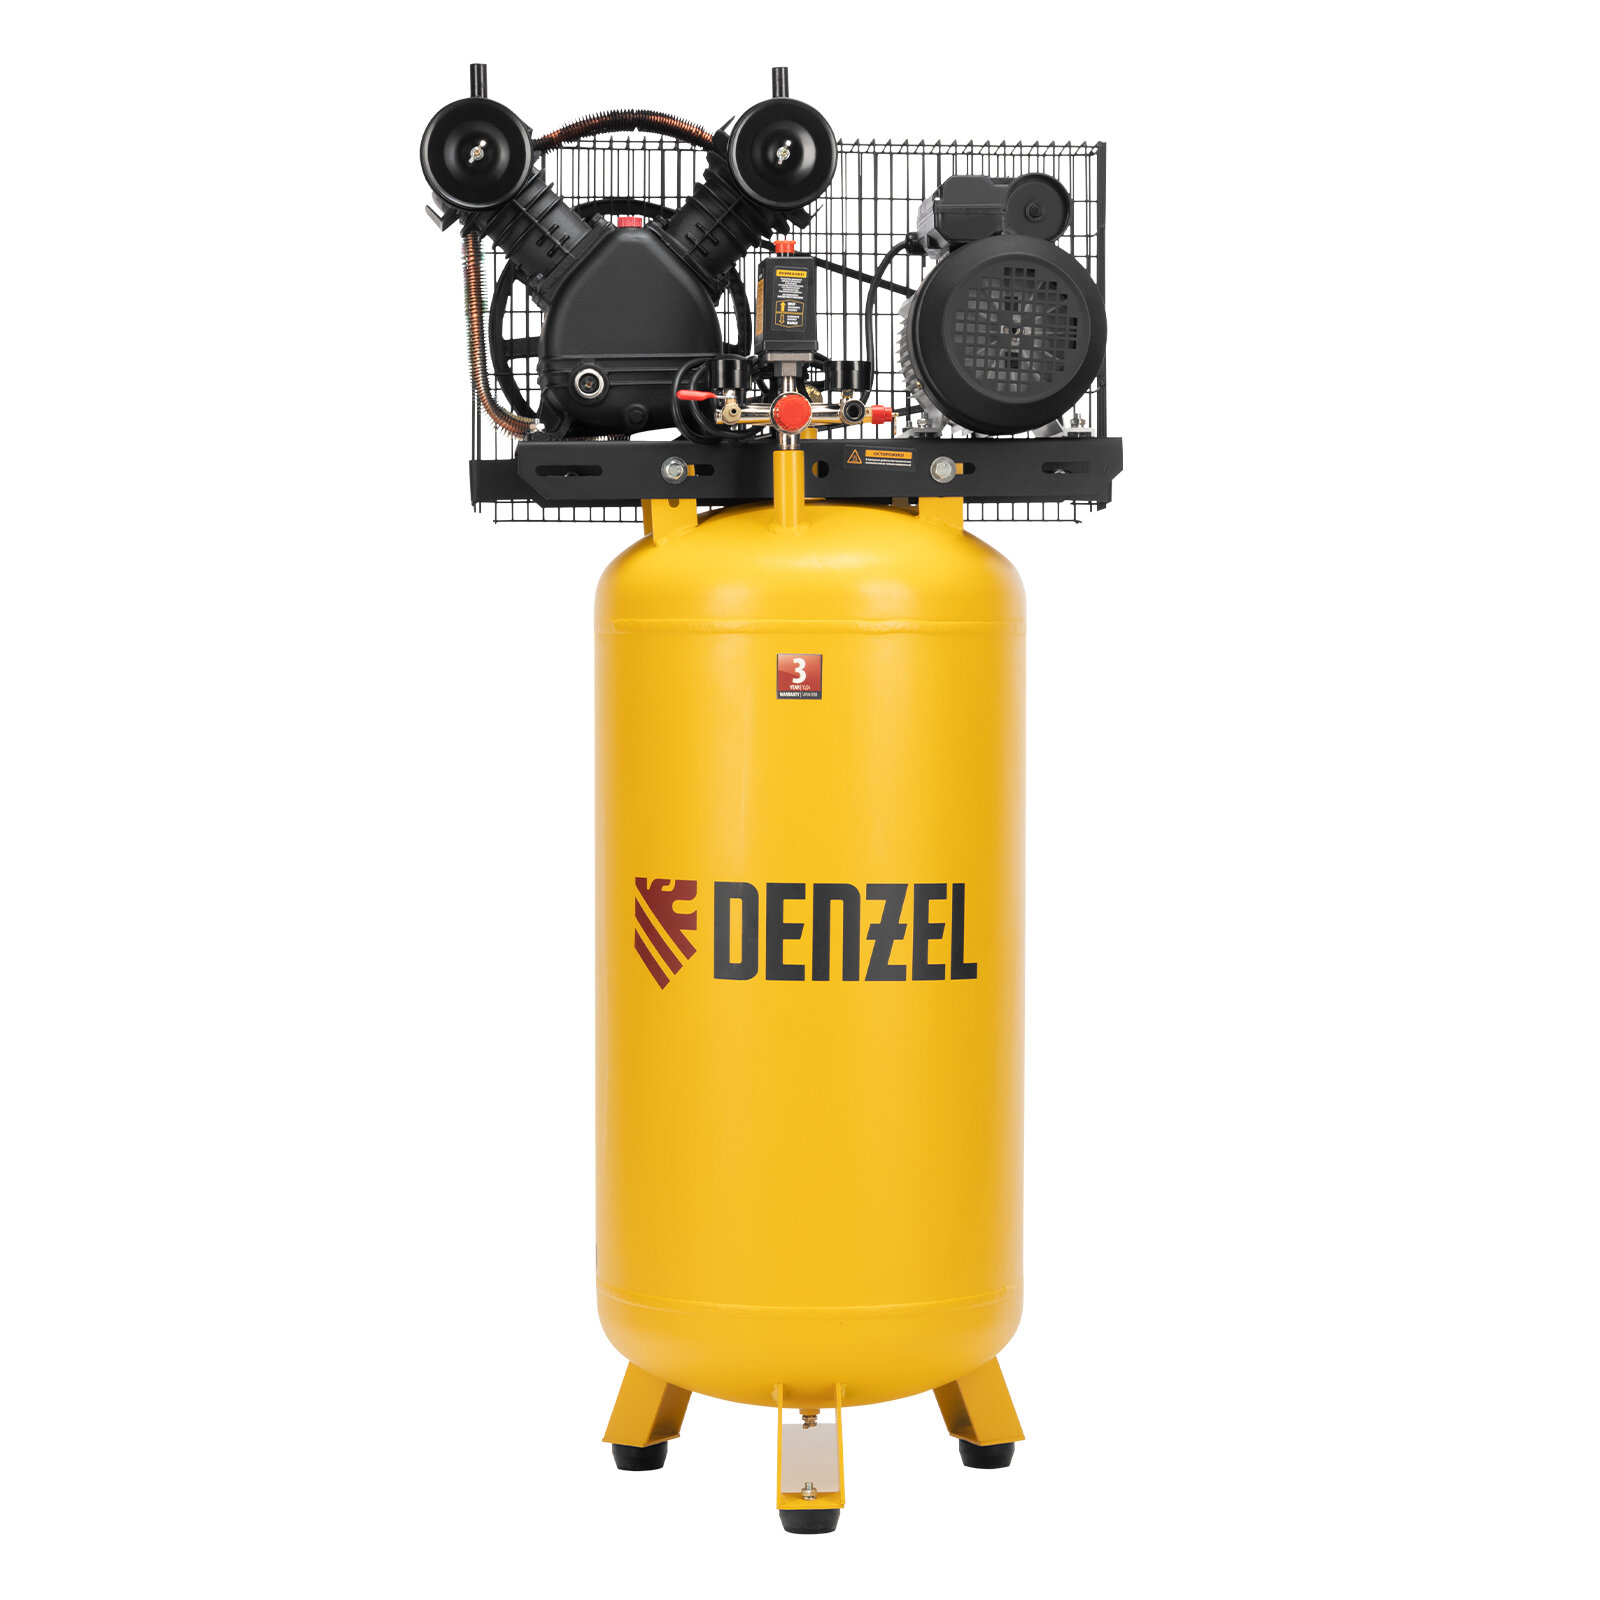 Компрессор воздушный рем. привод BCV2200/100V, 2,3 кВт, 100 литров, 440 л/мин// Denzel 58112